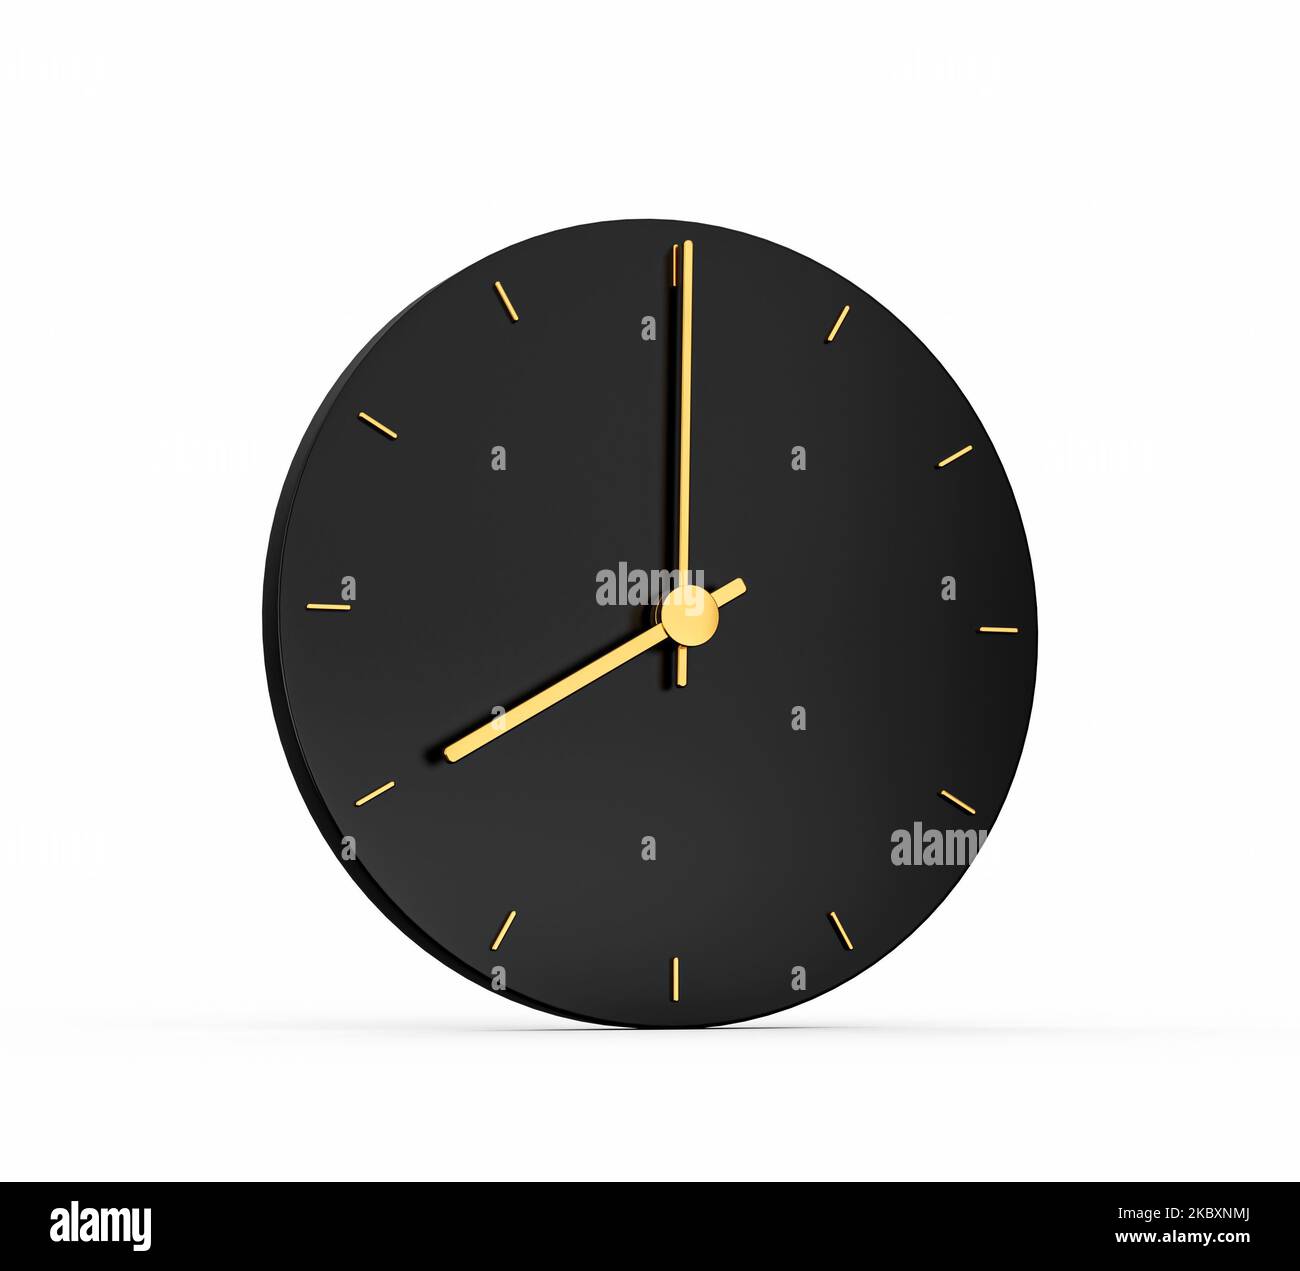 Smartwatch rotondo con cinturino in metallo con mesh dorata, quadrante nero  e numeri digitali, isolato su sfondo bianco Foto stock - Alamy